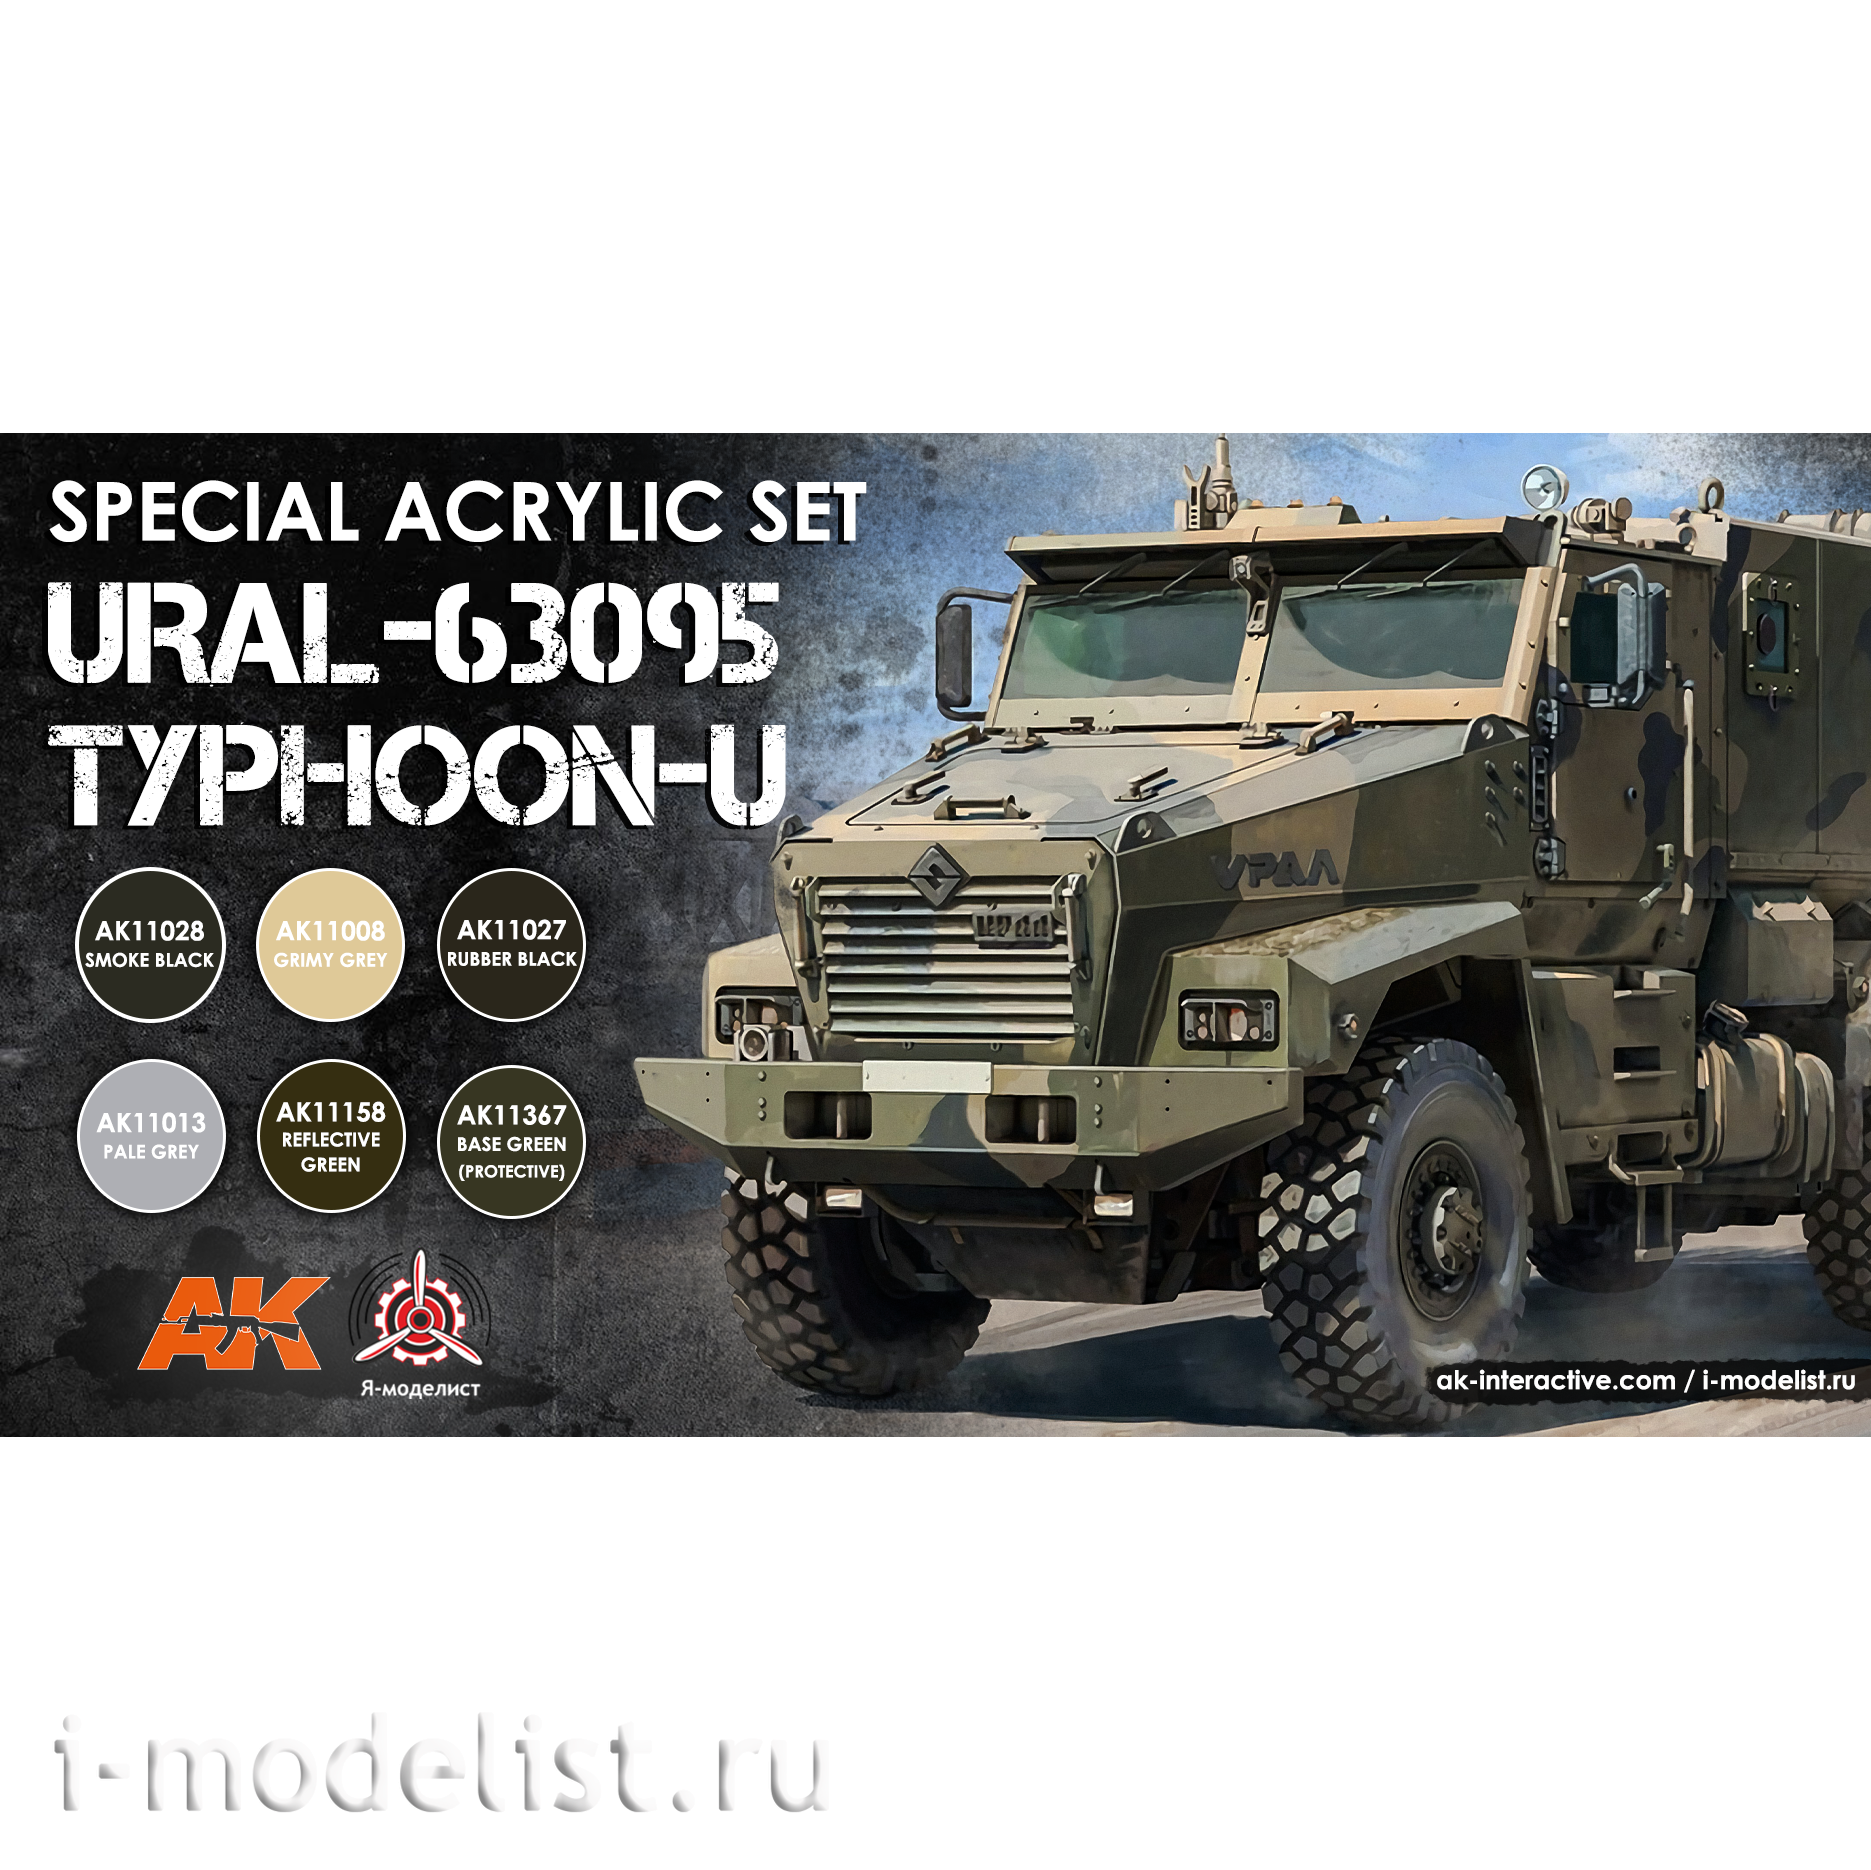 AK4303 AK Interactive Набор акриловых красок для U Typhoon-U